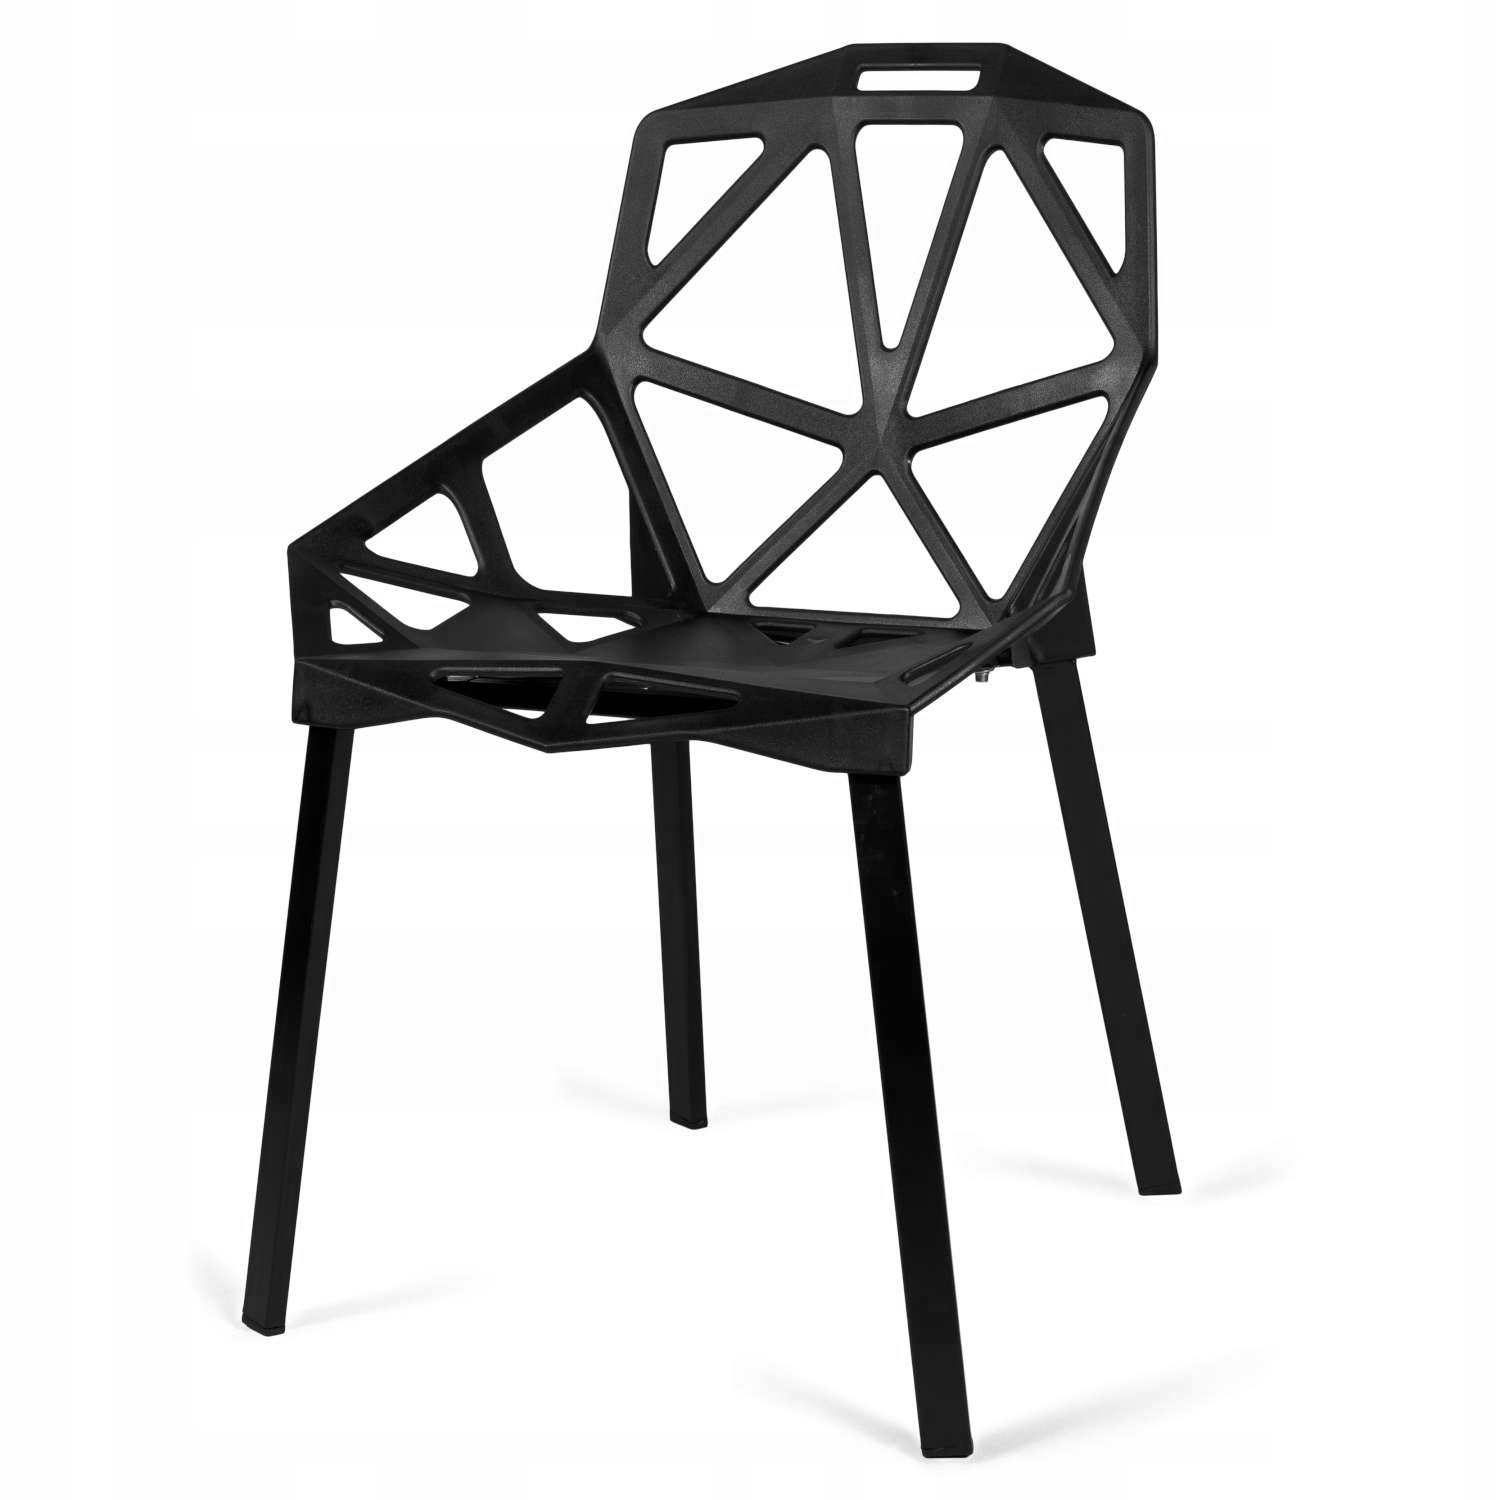 Krzesła ażurowe VECTOR zestaw 4 sztuki czarne